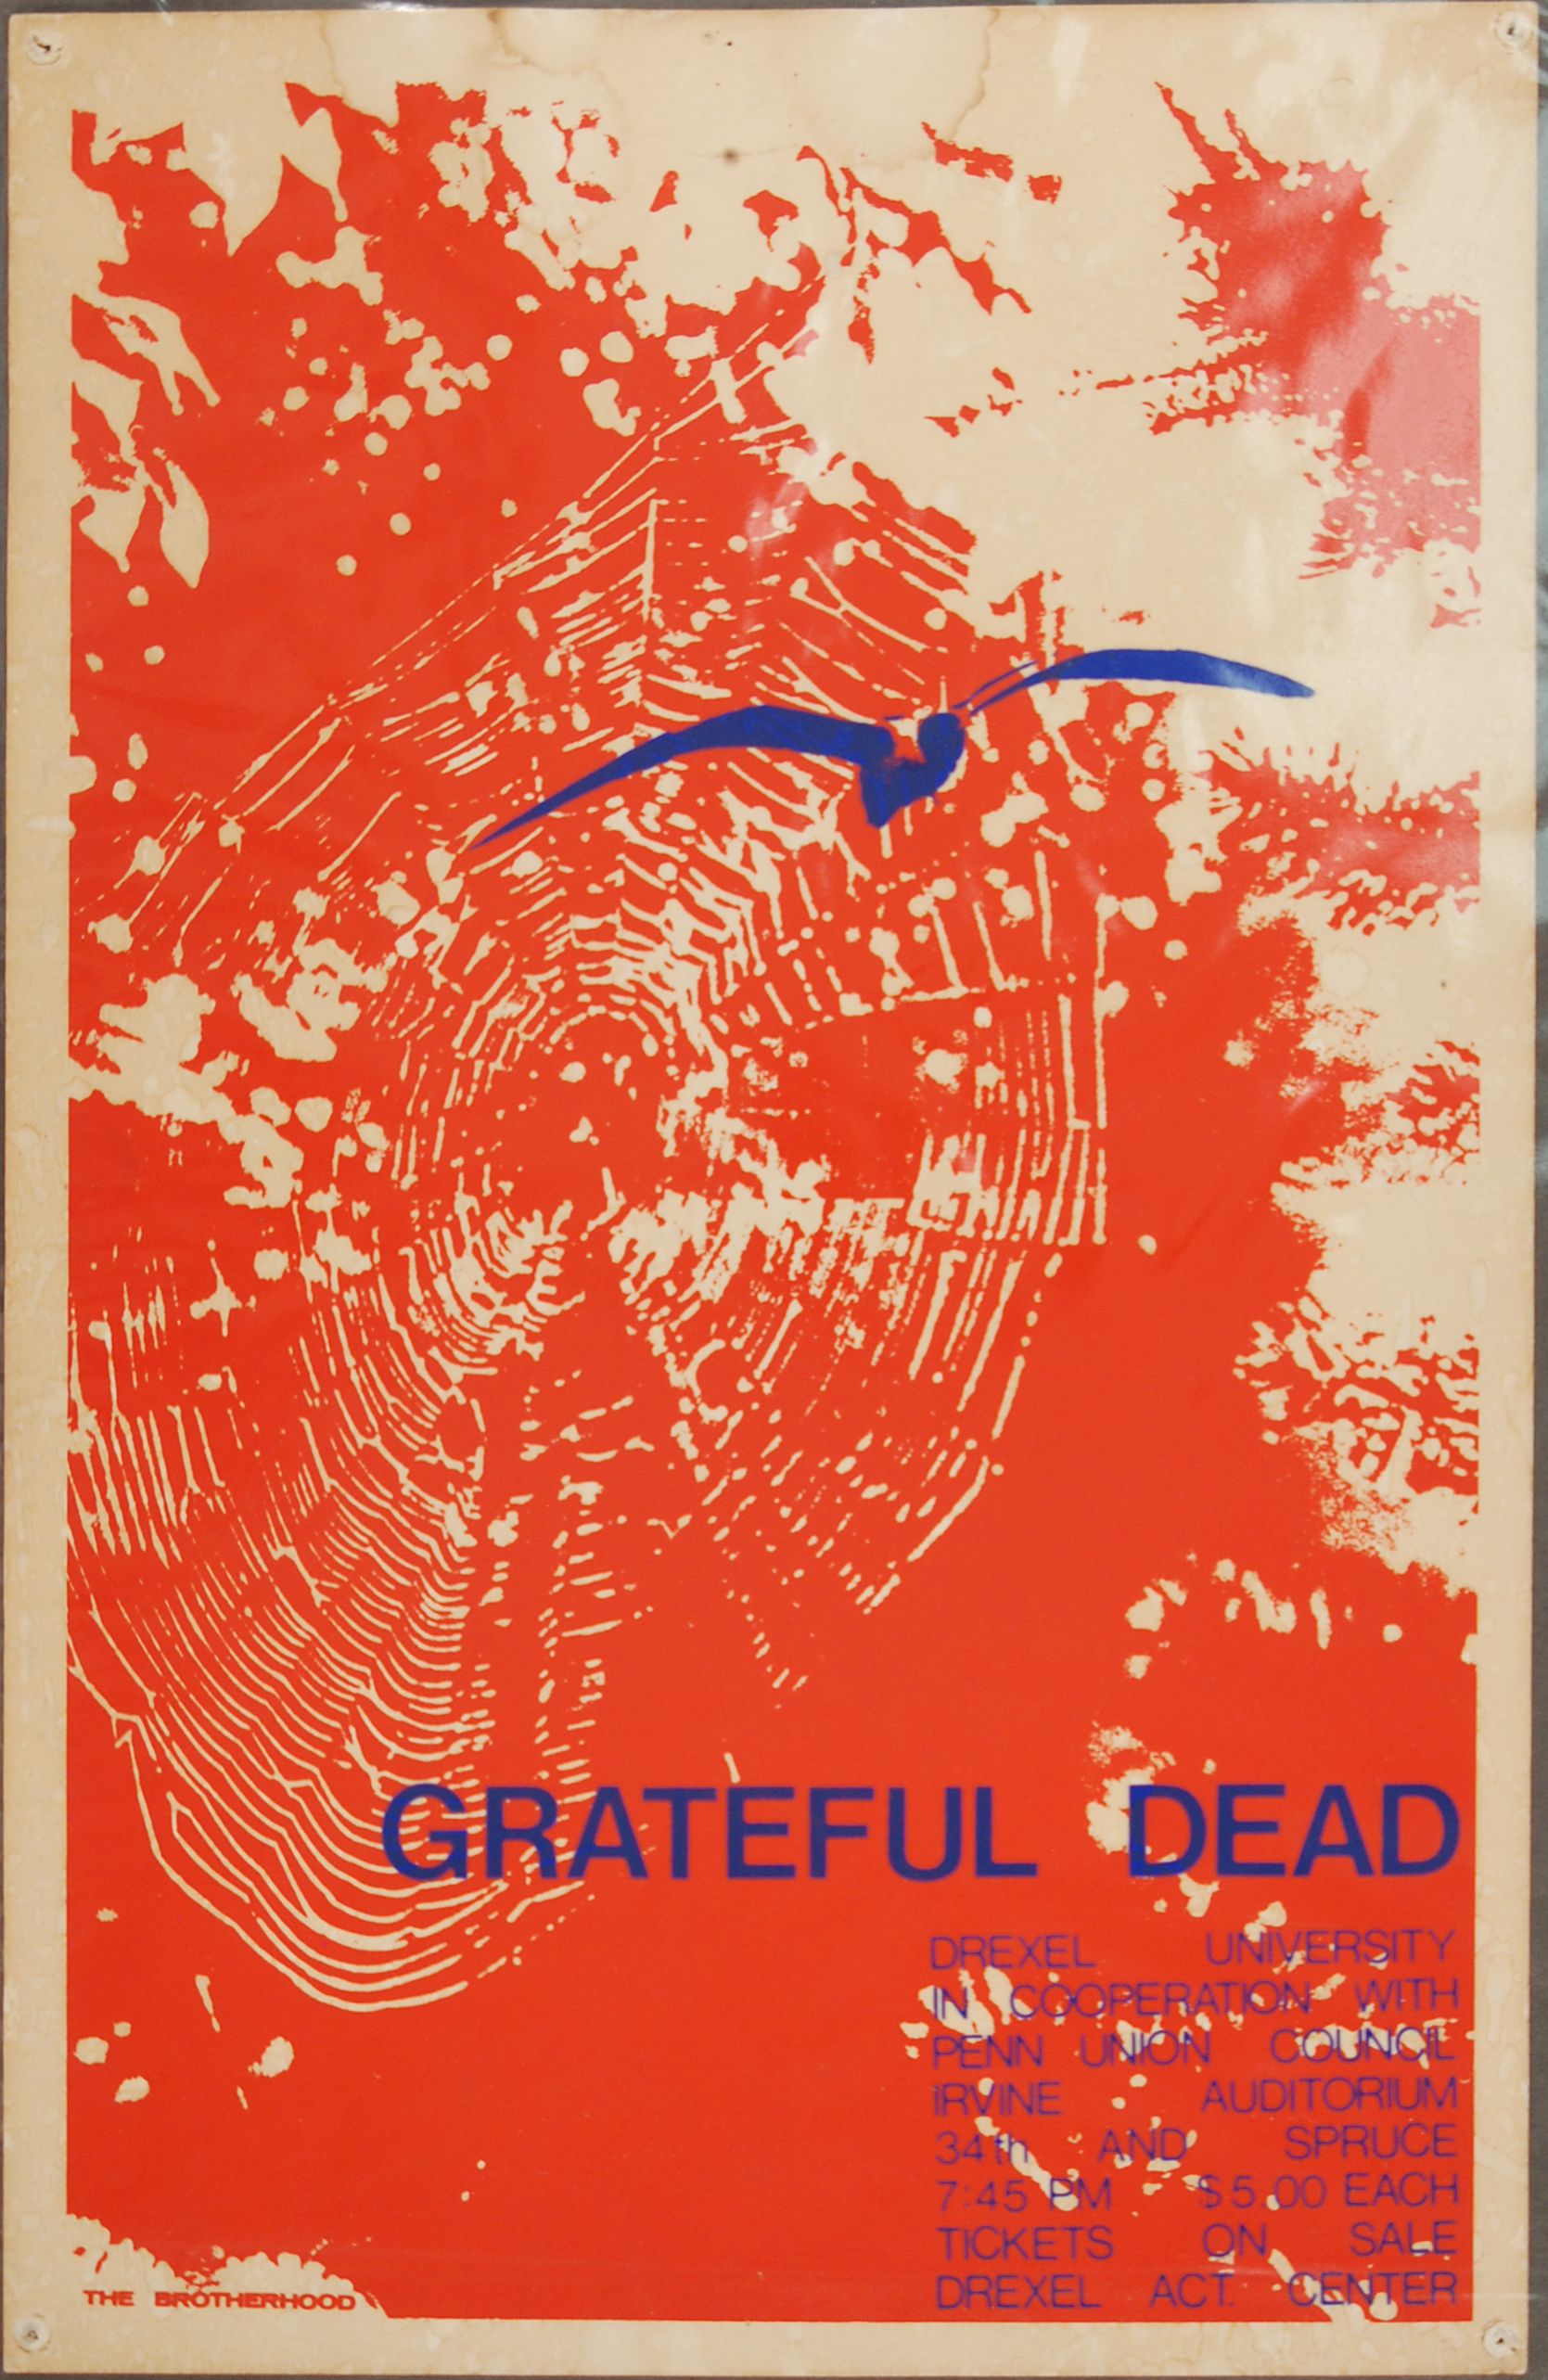 Grateful Dead Irvine Auditorium 1970 Concert Poster